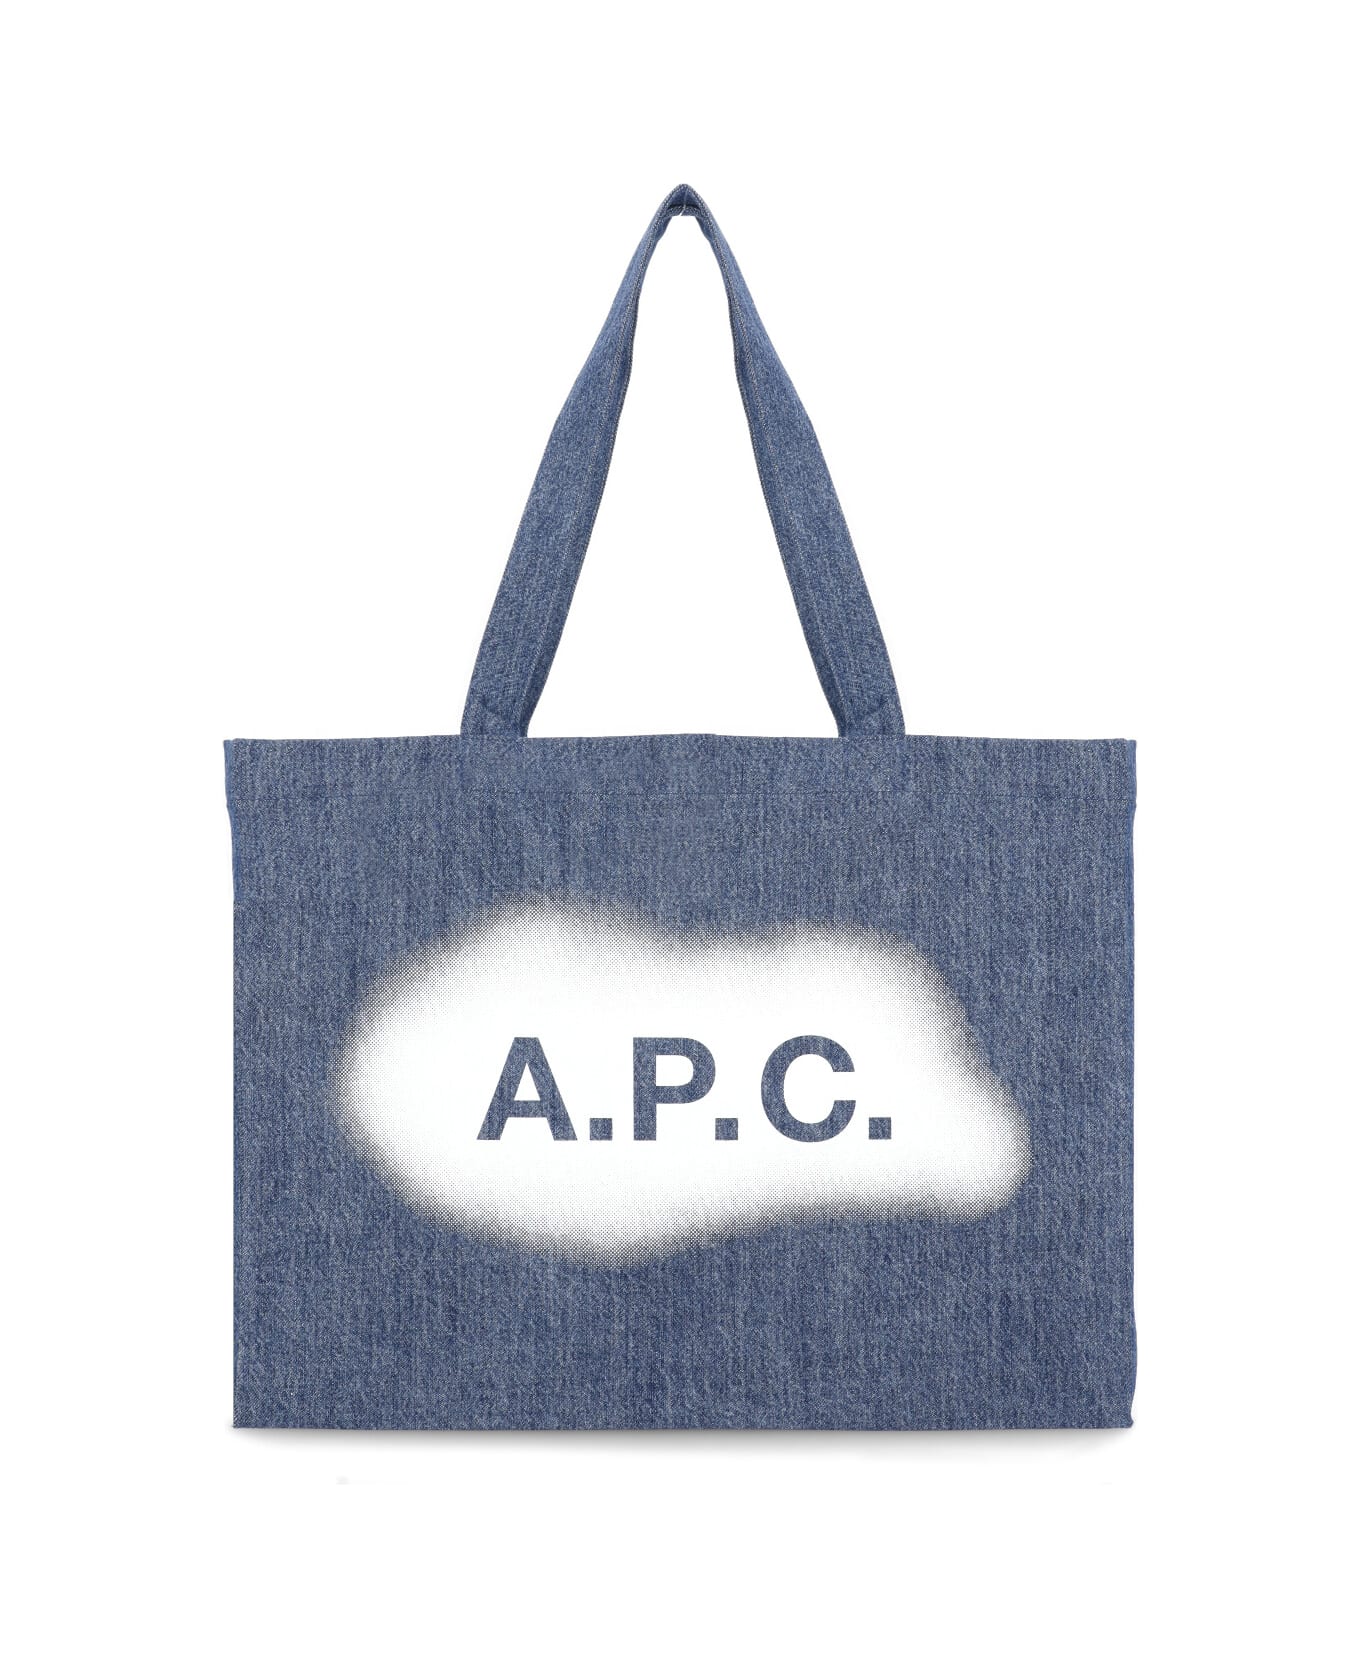 A.P.C. Diane Shopping Bag - Blue